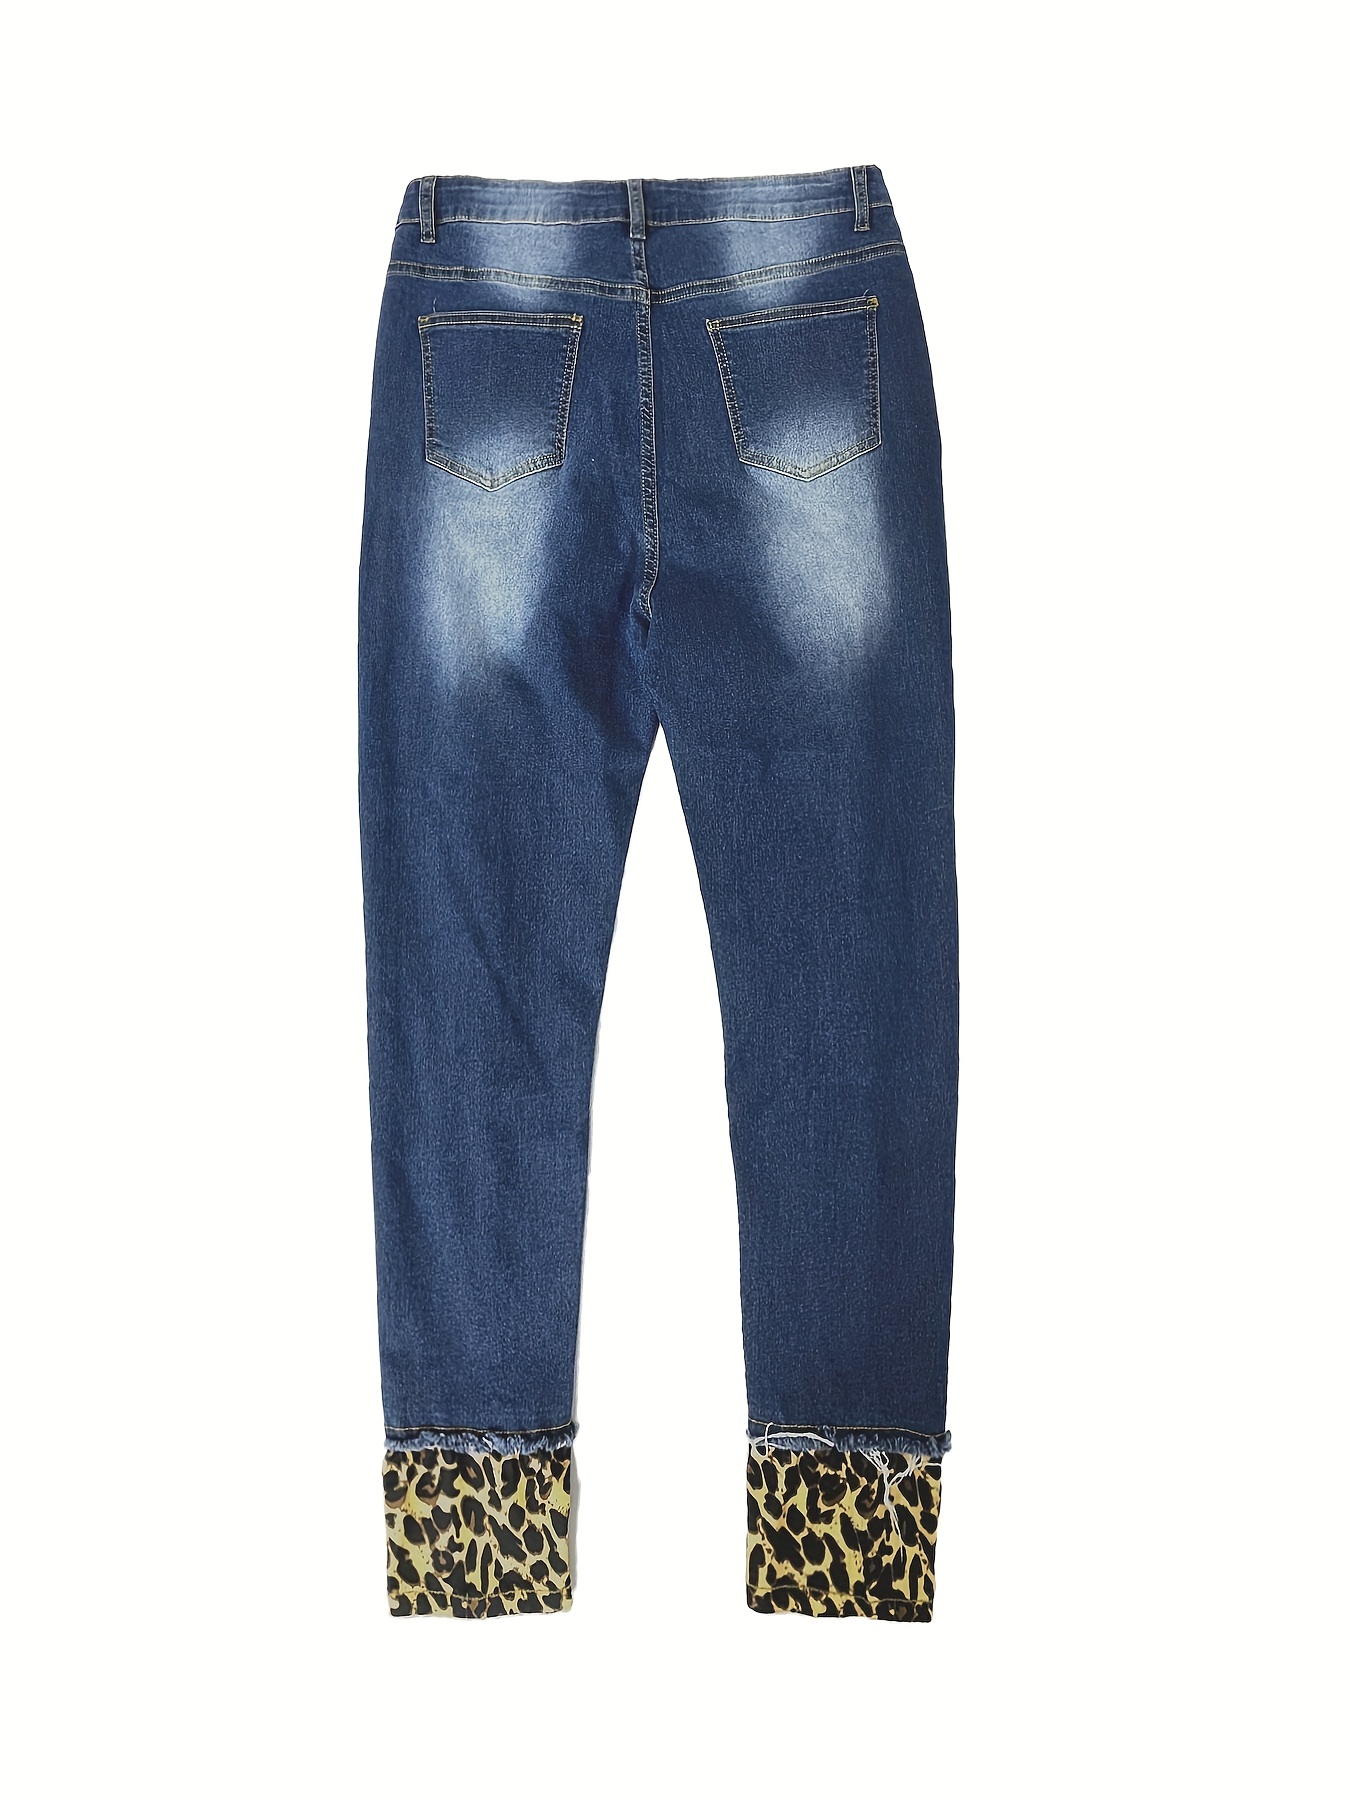 Plus Size Casual Jeans Women's Plus Leopard Print Button Cut - Temu